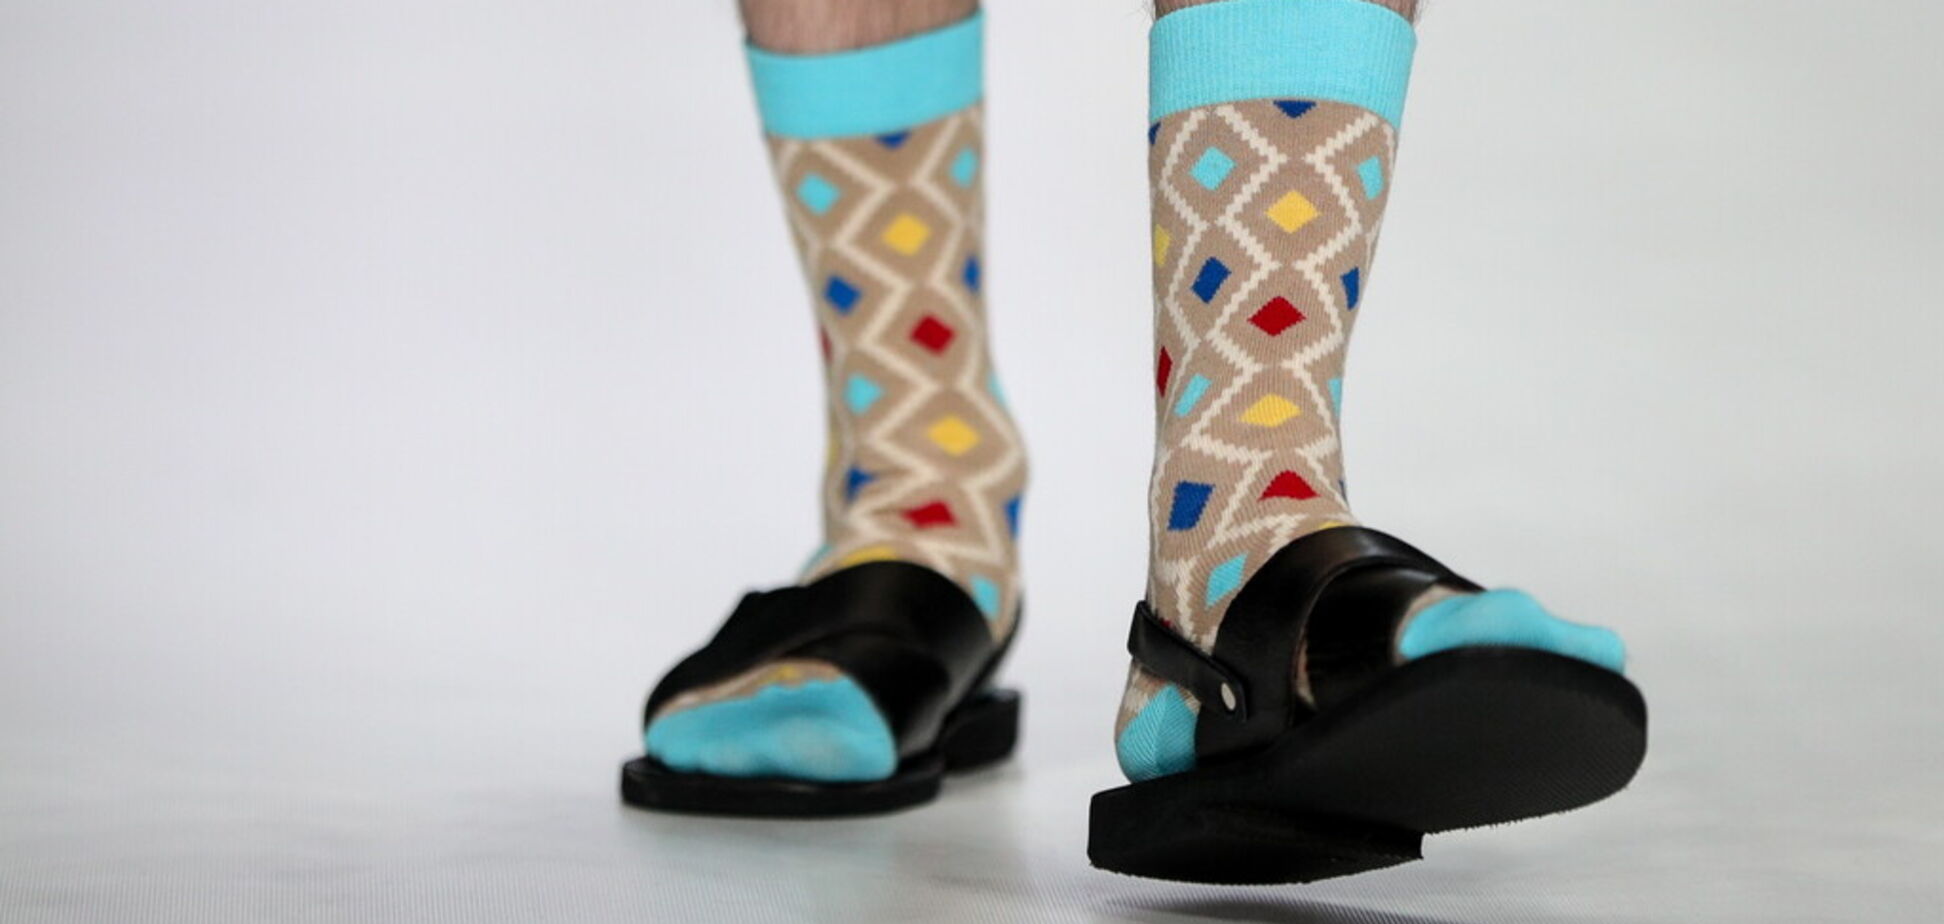 Сандалі зі шкарпетками стали модним трендом